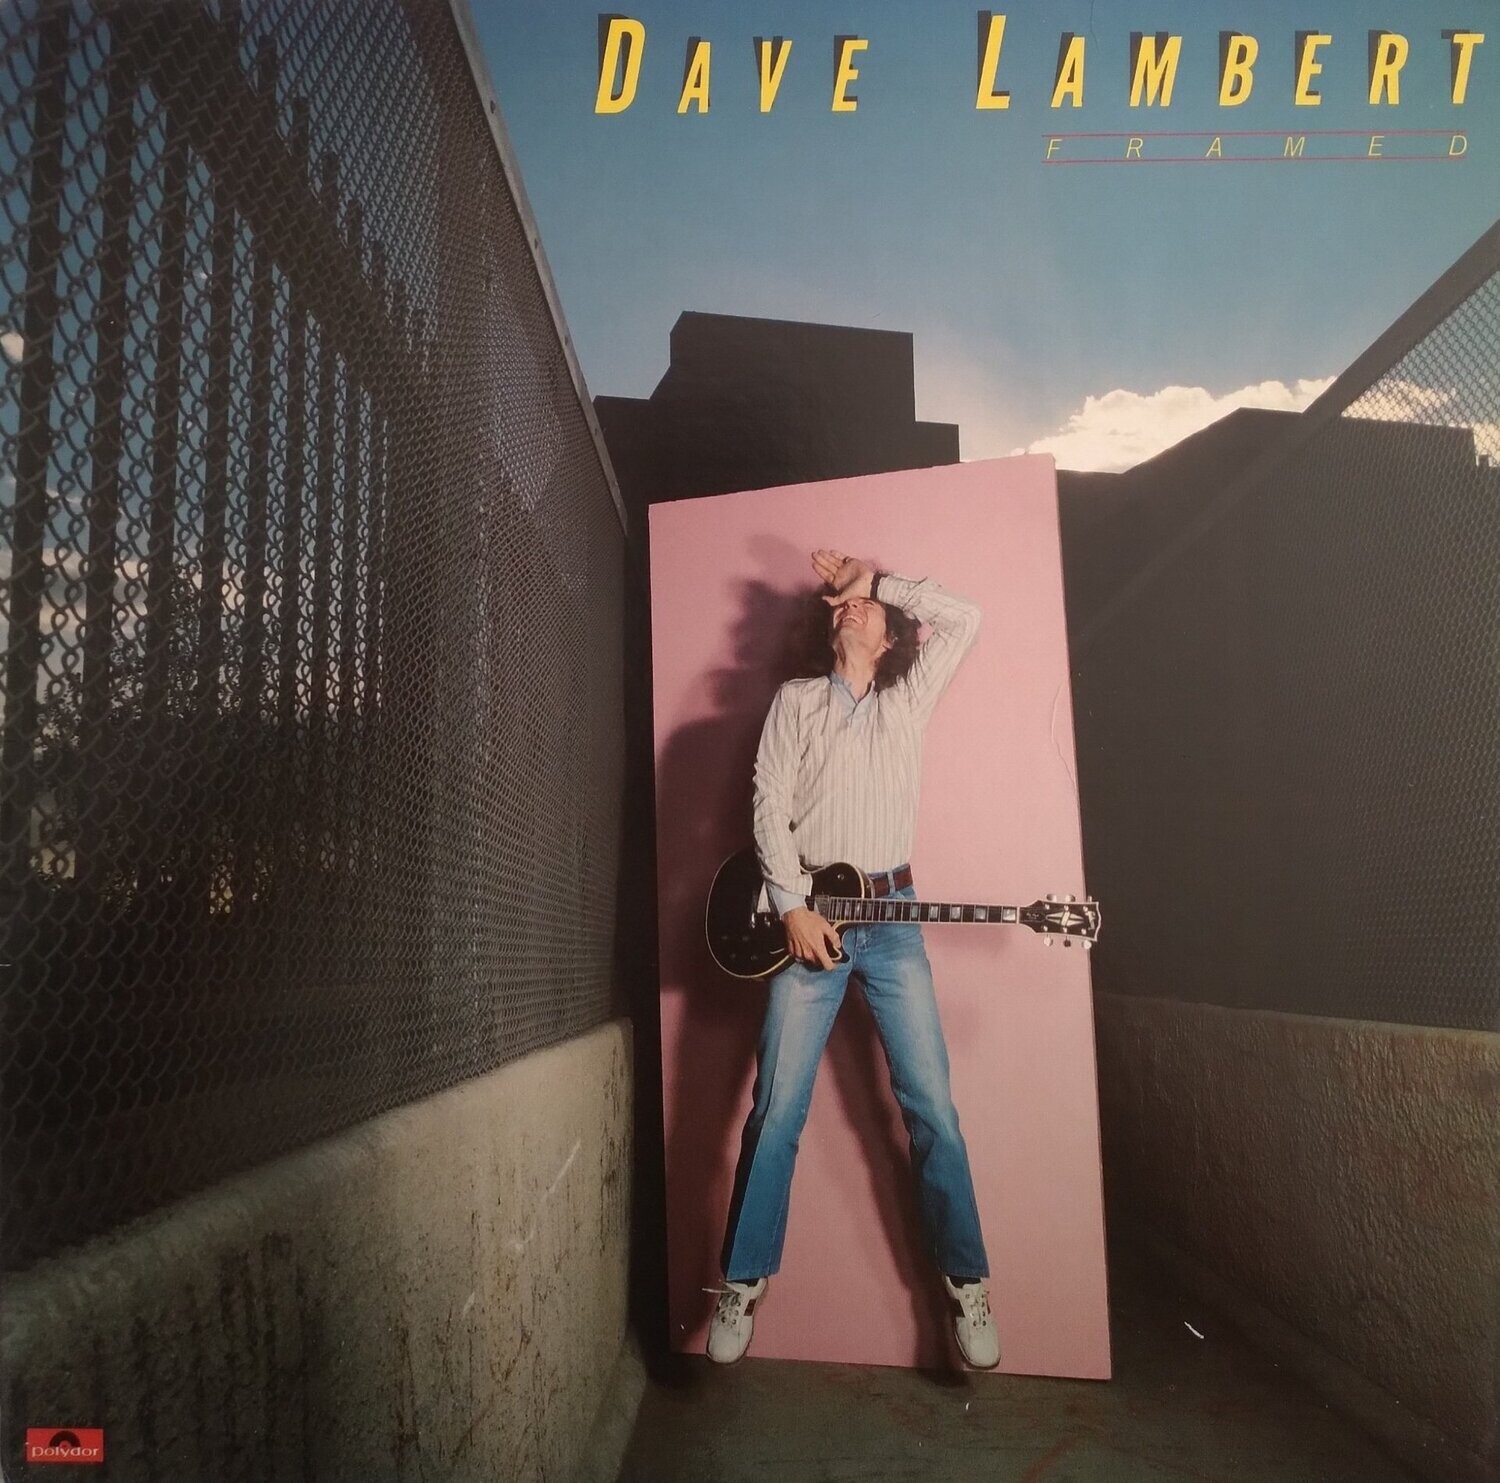 Dave Lambert – Framed (1979)